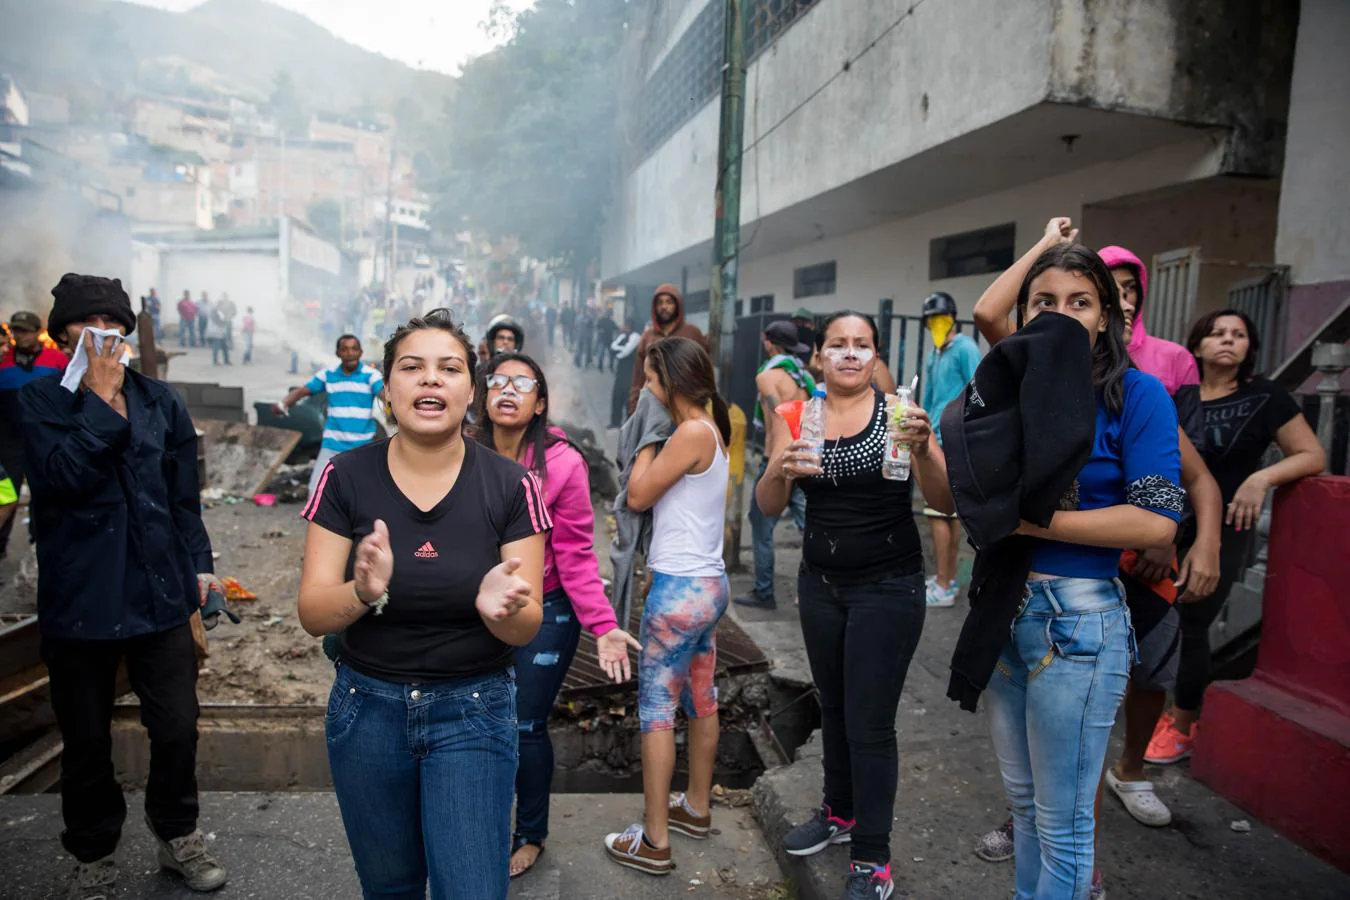 Las imágenes más dramáticas de la sublevación militar en Venezuela. Vecinos del barrio de Cotiza, al norte de Caracas, manifiestan en las calles en apoyo a los militares sublevados